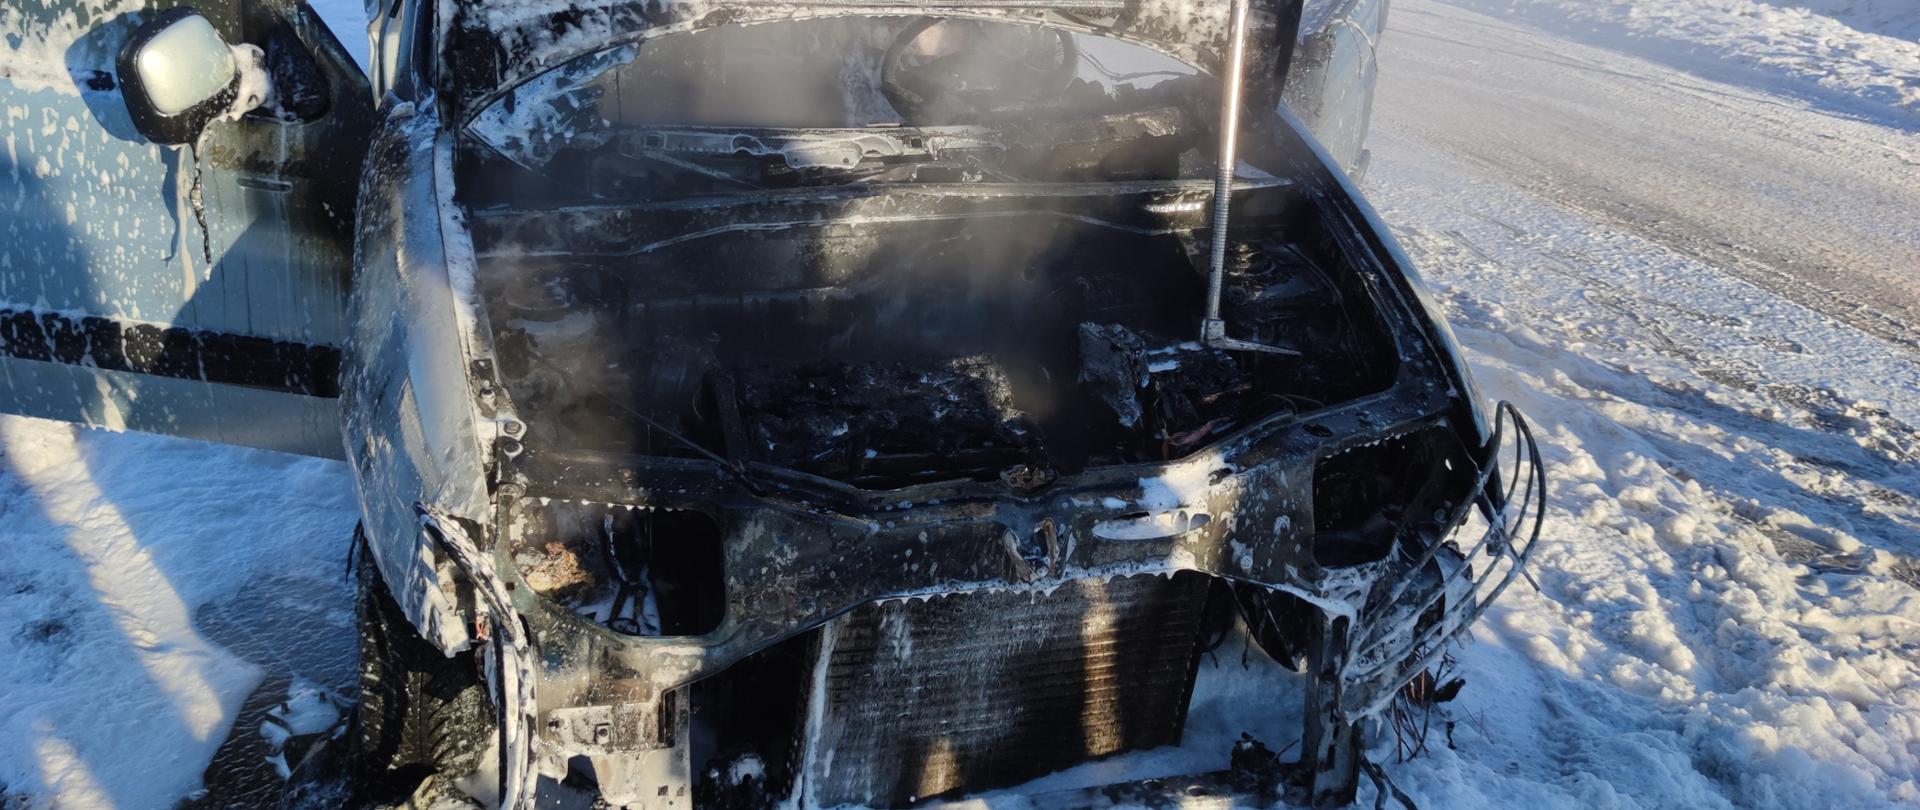 Zdjęcie przedstawia samochód z otwartą maską stojący na zaśnieżonej ulicy. W środku widać spaloną komorę silnika oraz lekki dym